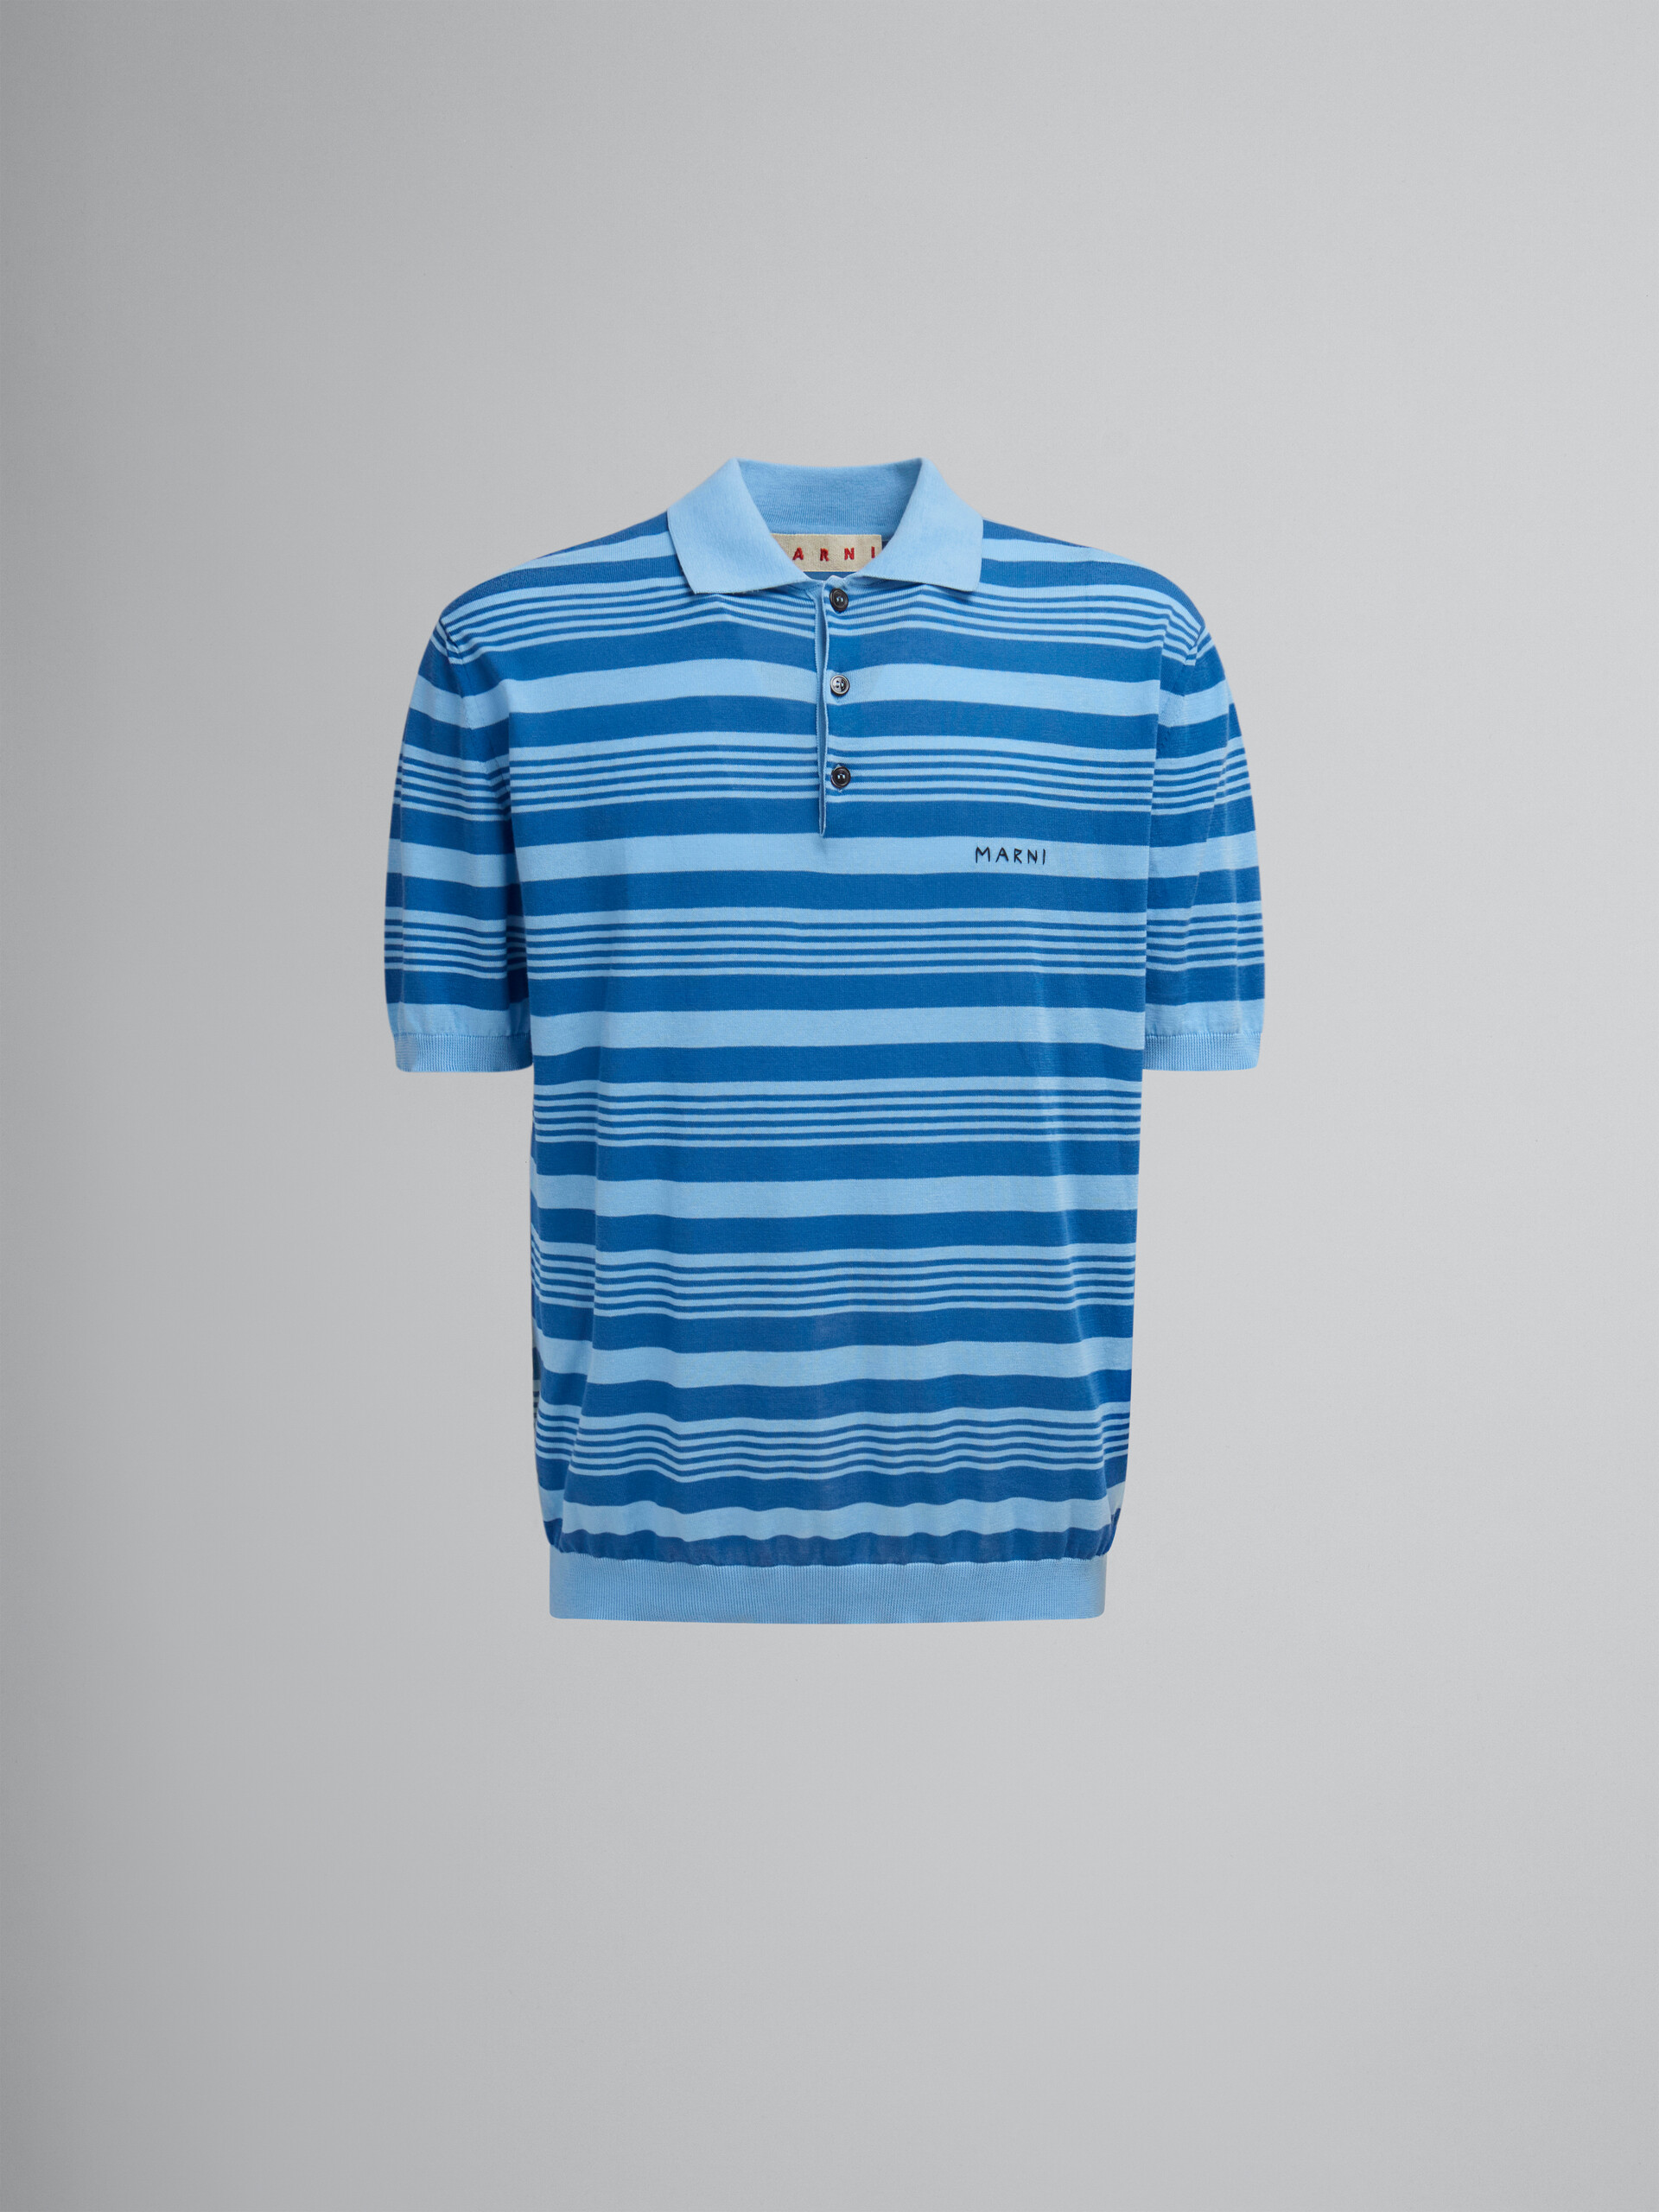 Blau gestreiftes Polohemd aus Baumwolle mit Marni-Flicken - Hemden - Image 1